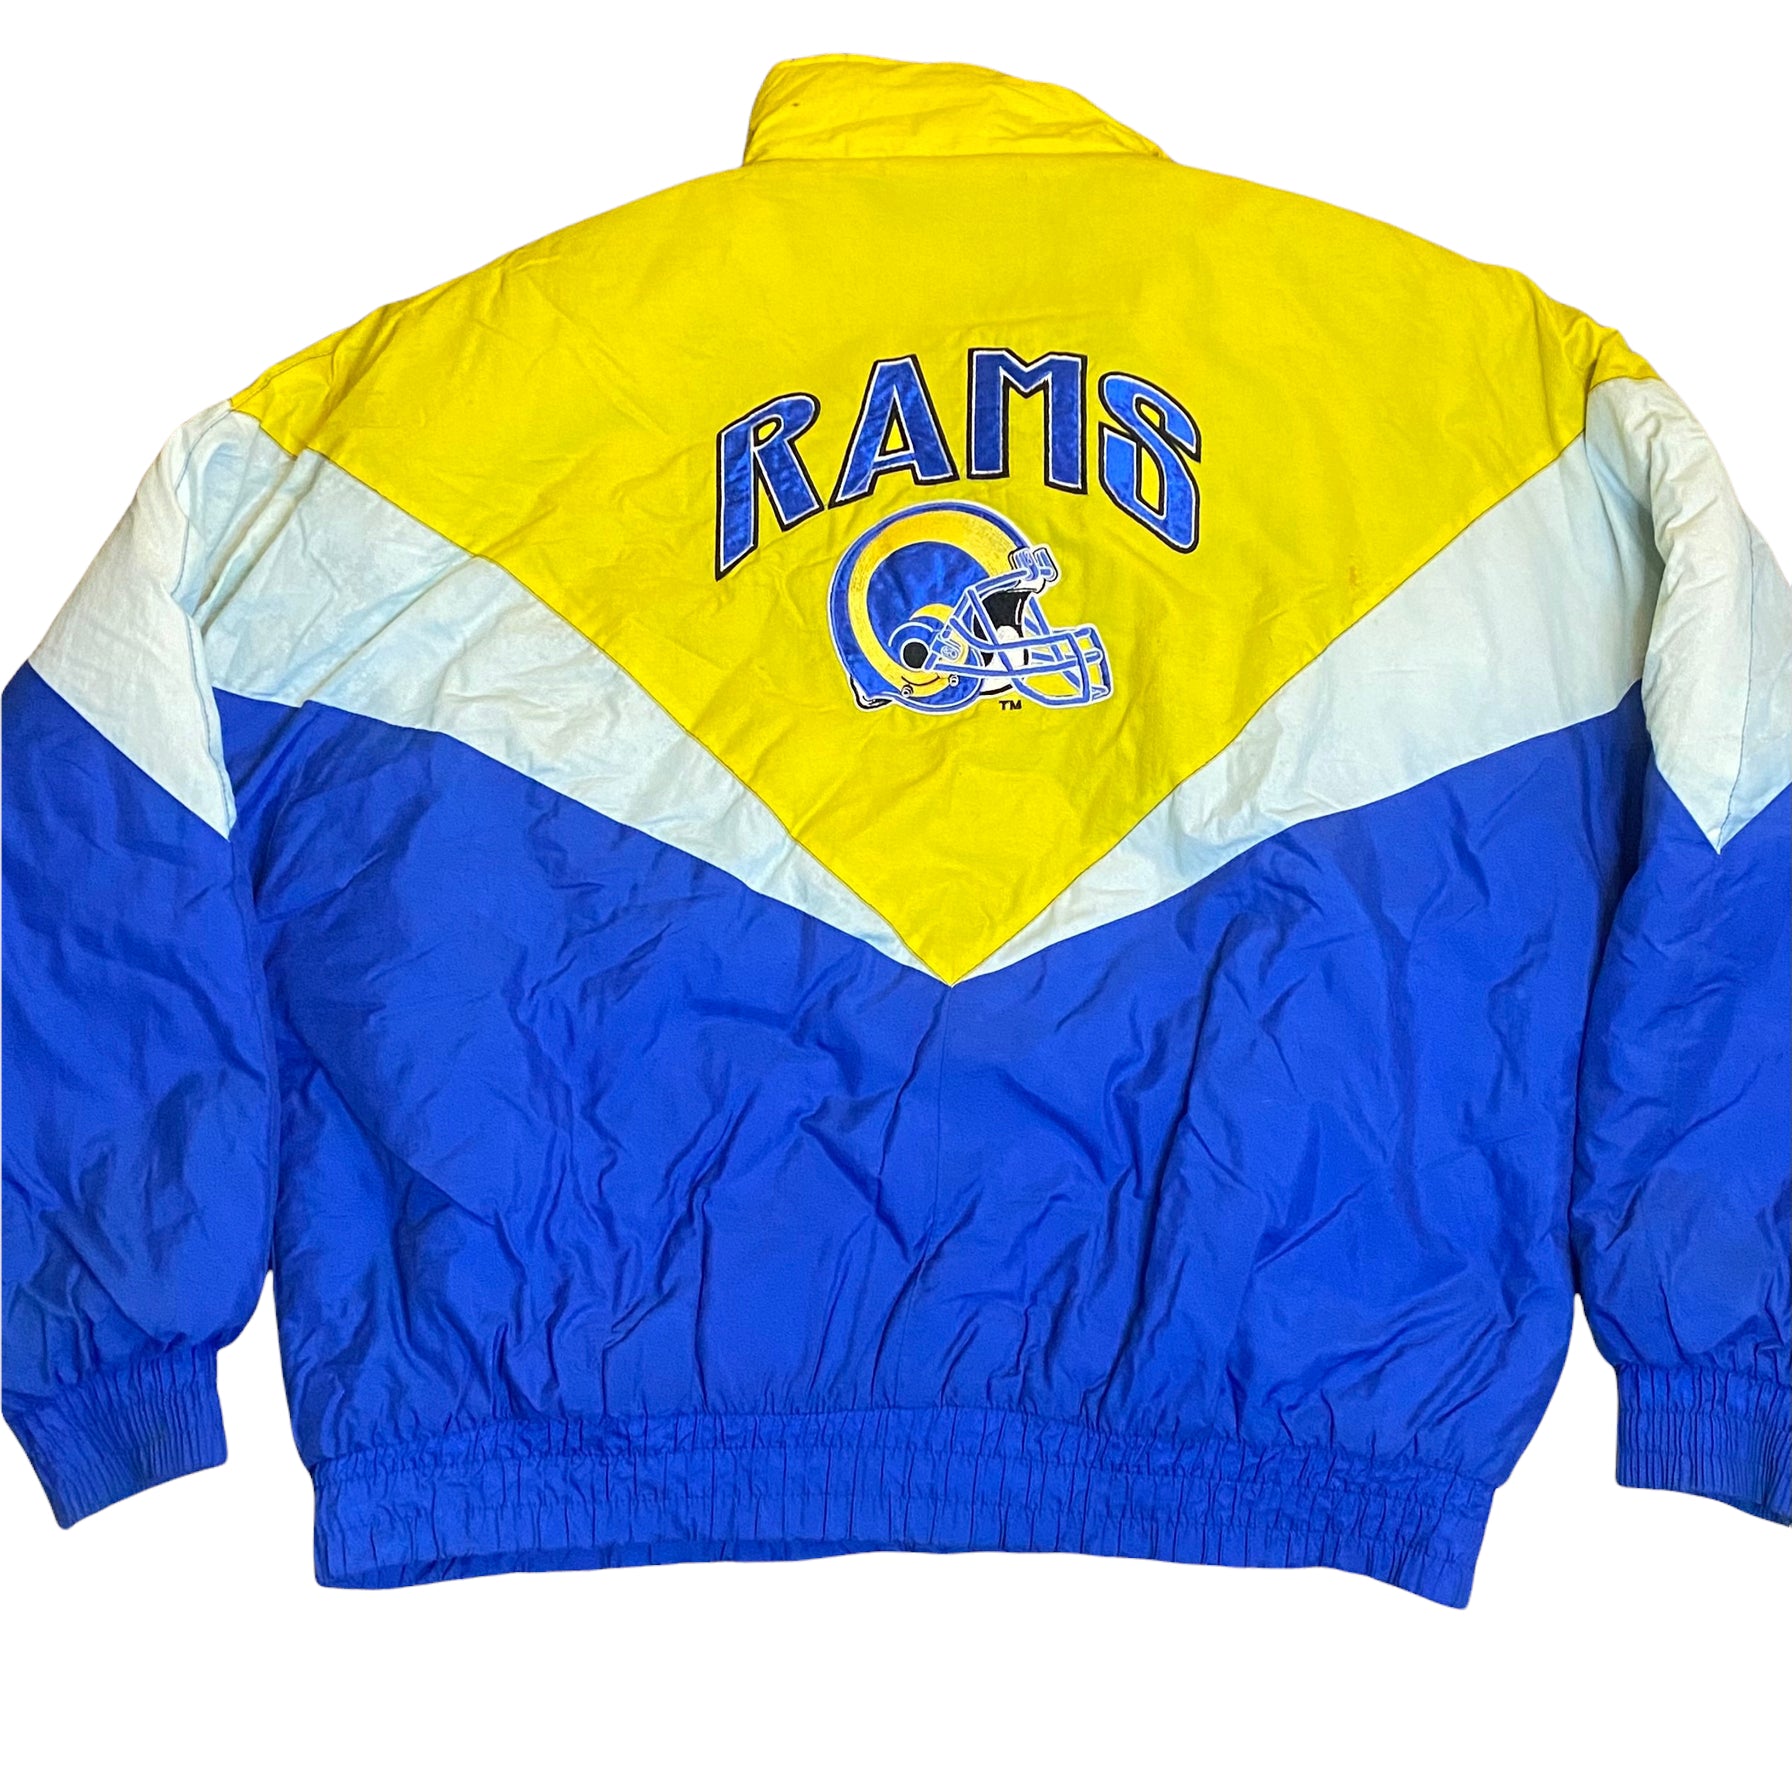 Vintage NFL St. Luis Rams jacket